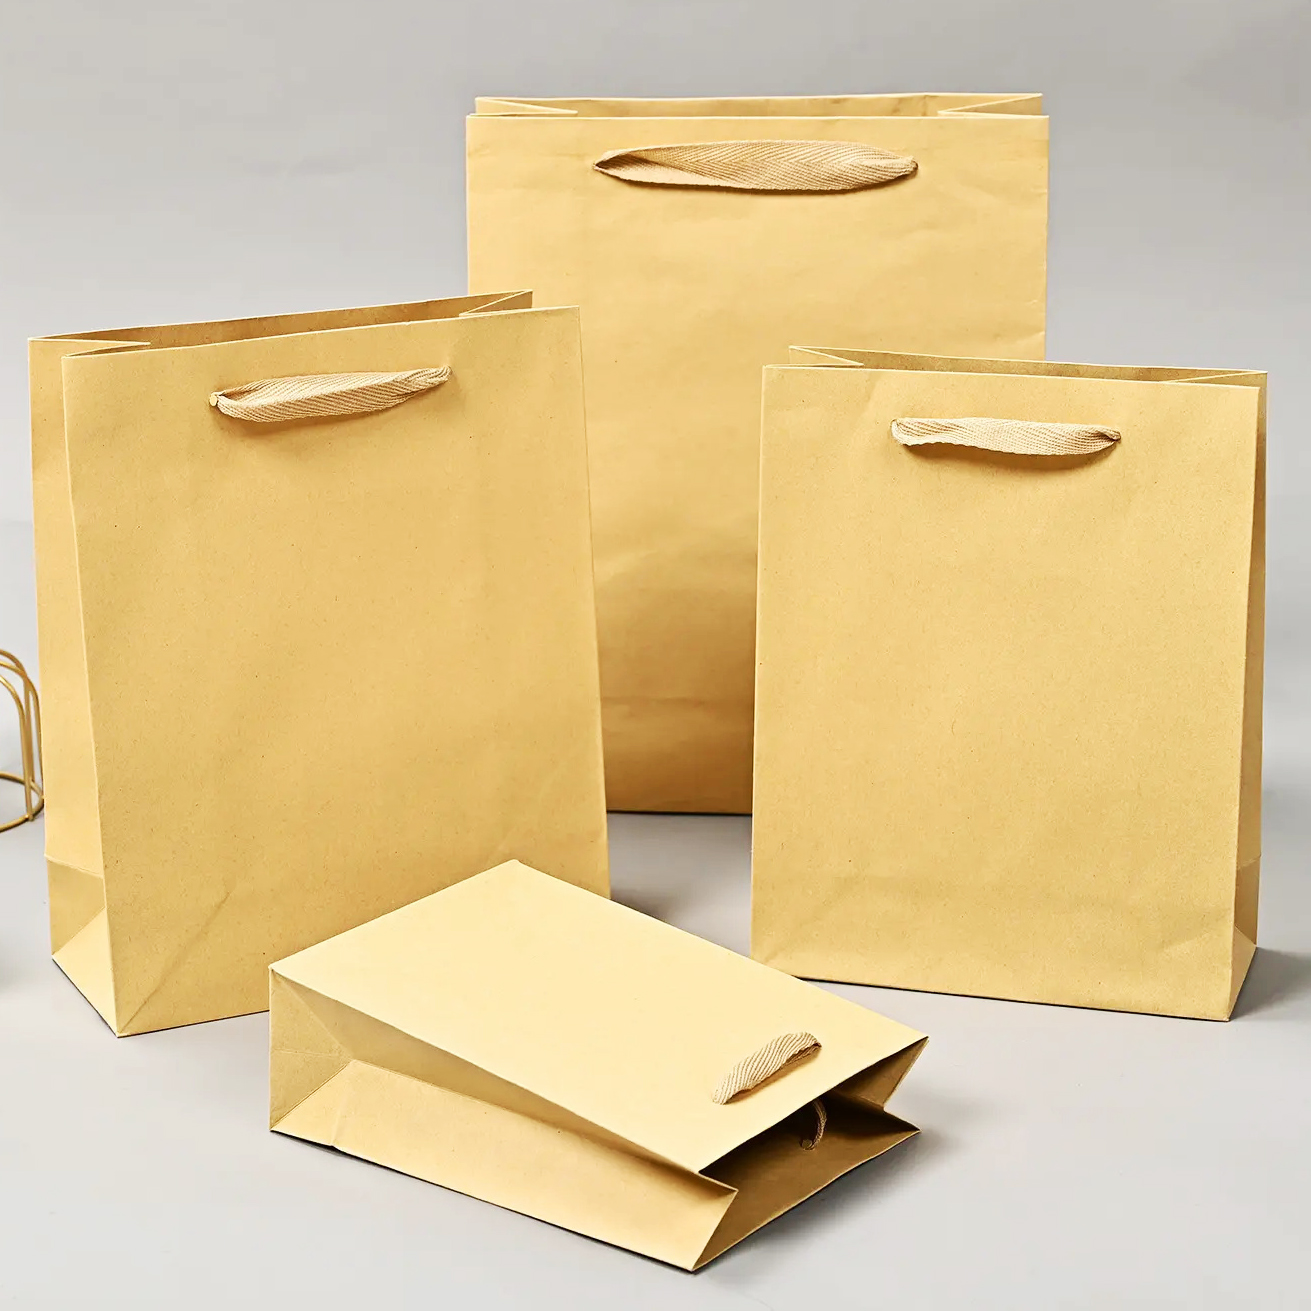 ¿Cómo se imprime en una bolsa de papel artesanal?